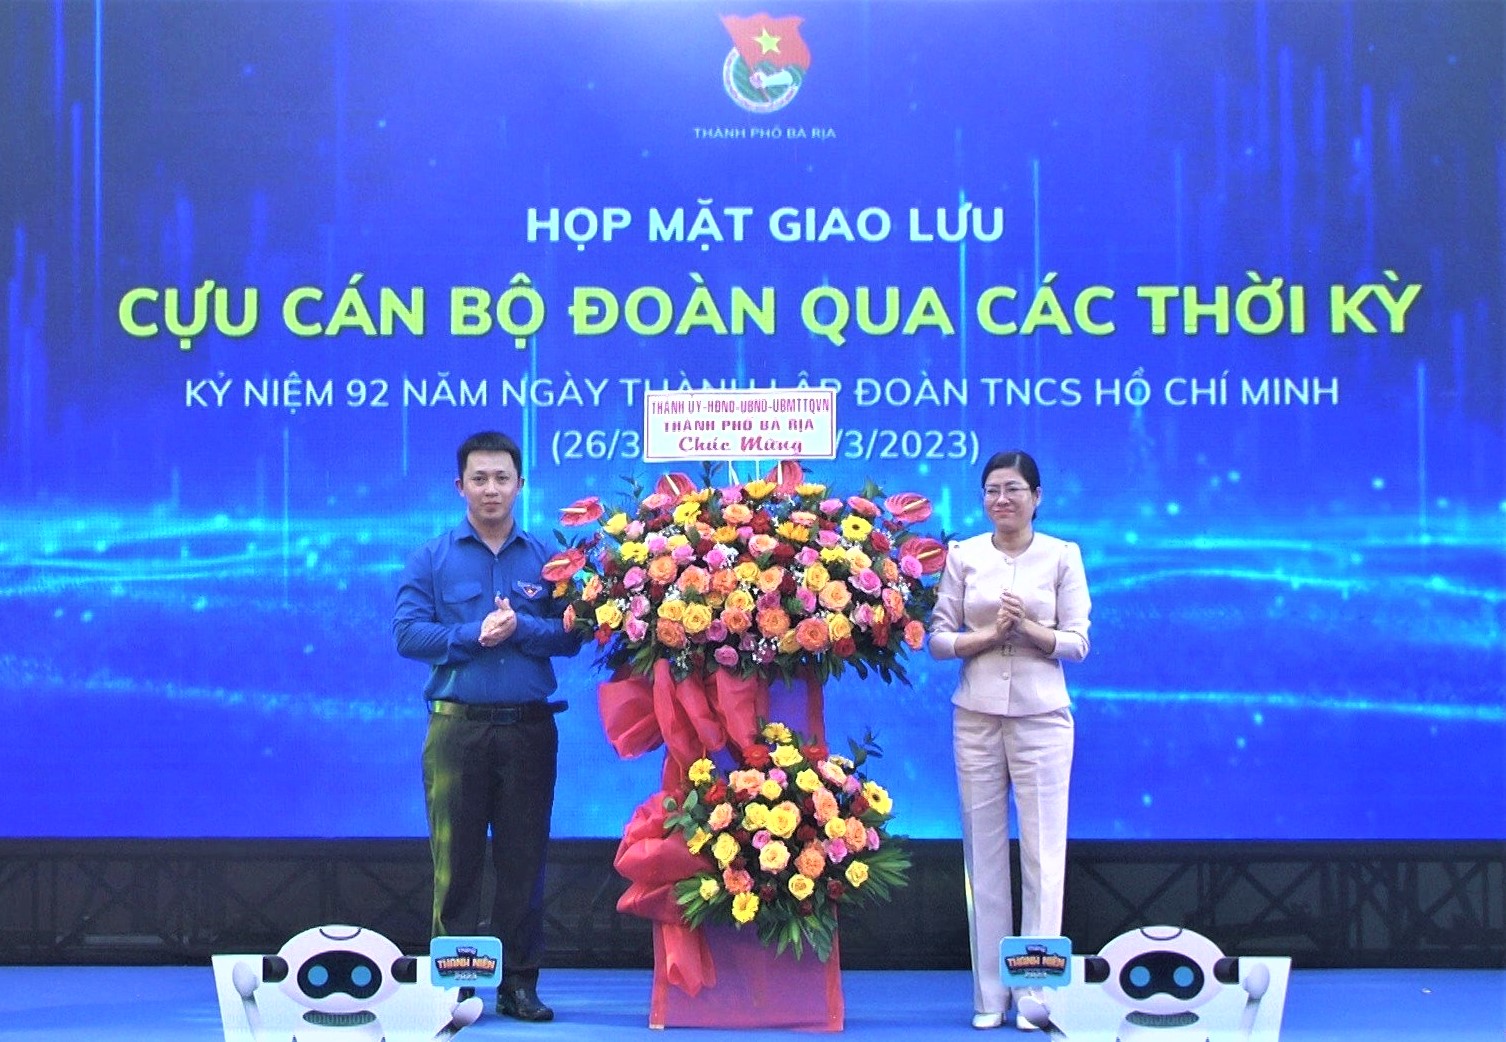 Bà Lê Thị Thủy, Phó Bí thư Thường trực Thành ủy Bà Rịa tặng hoa chúc mừng kỷ niệm Ngày thành lập Đoàn TNCS Hồ Chí Minh cho Thành Đoàn Bà Rịa.